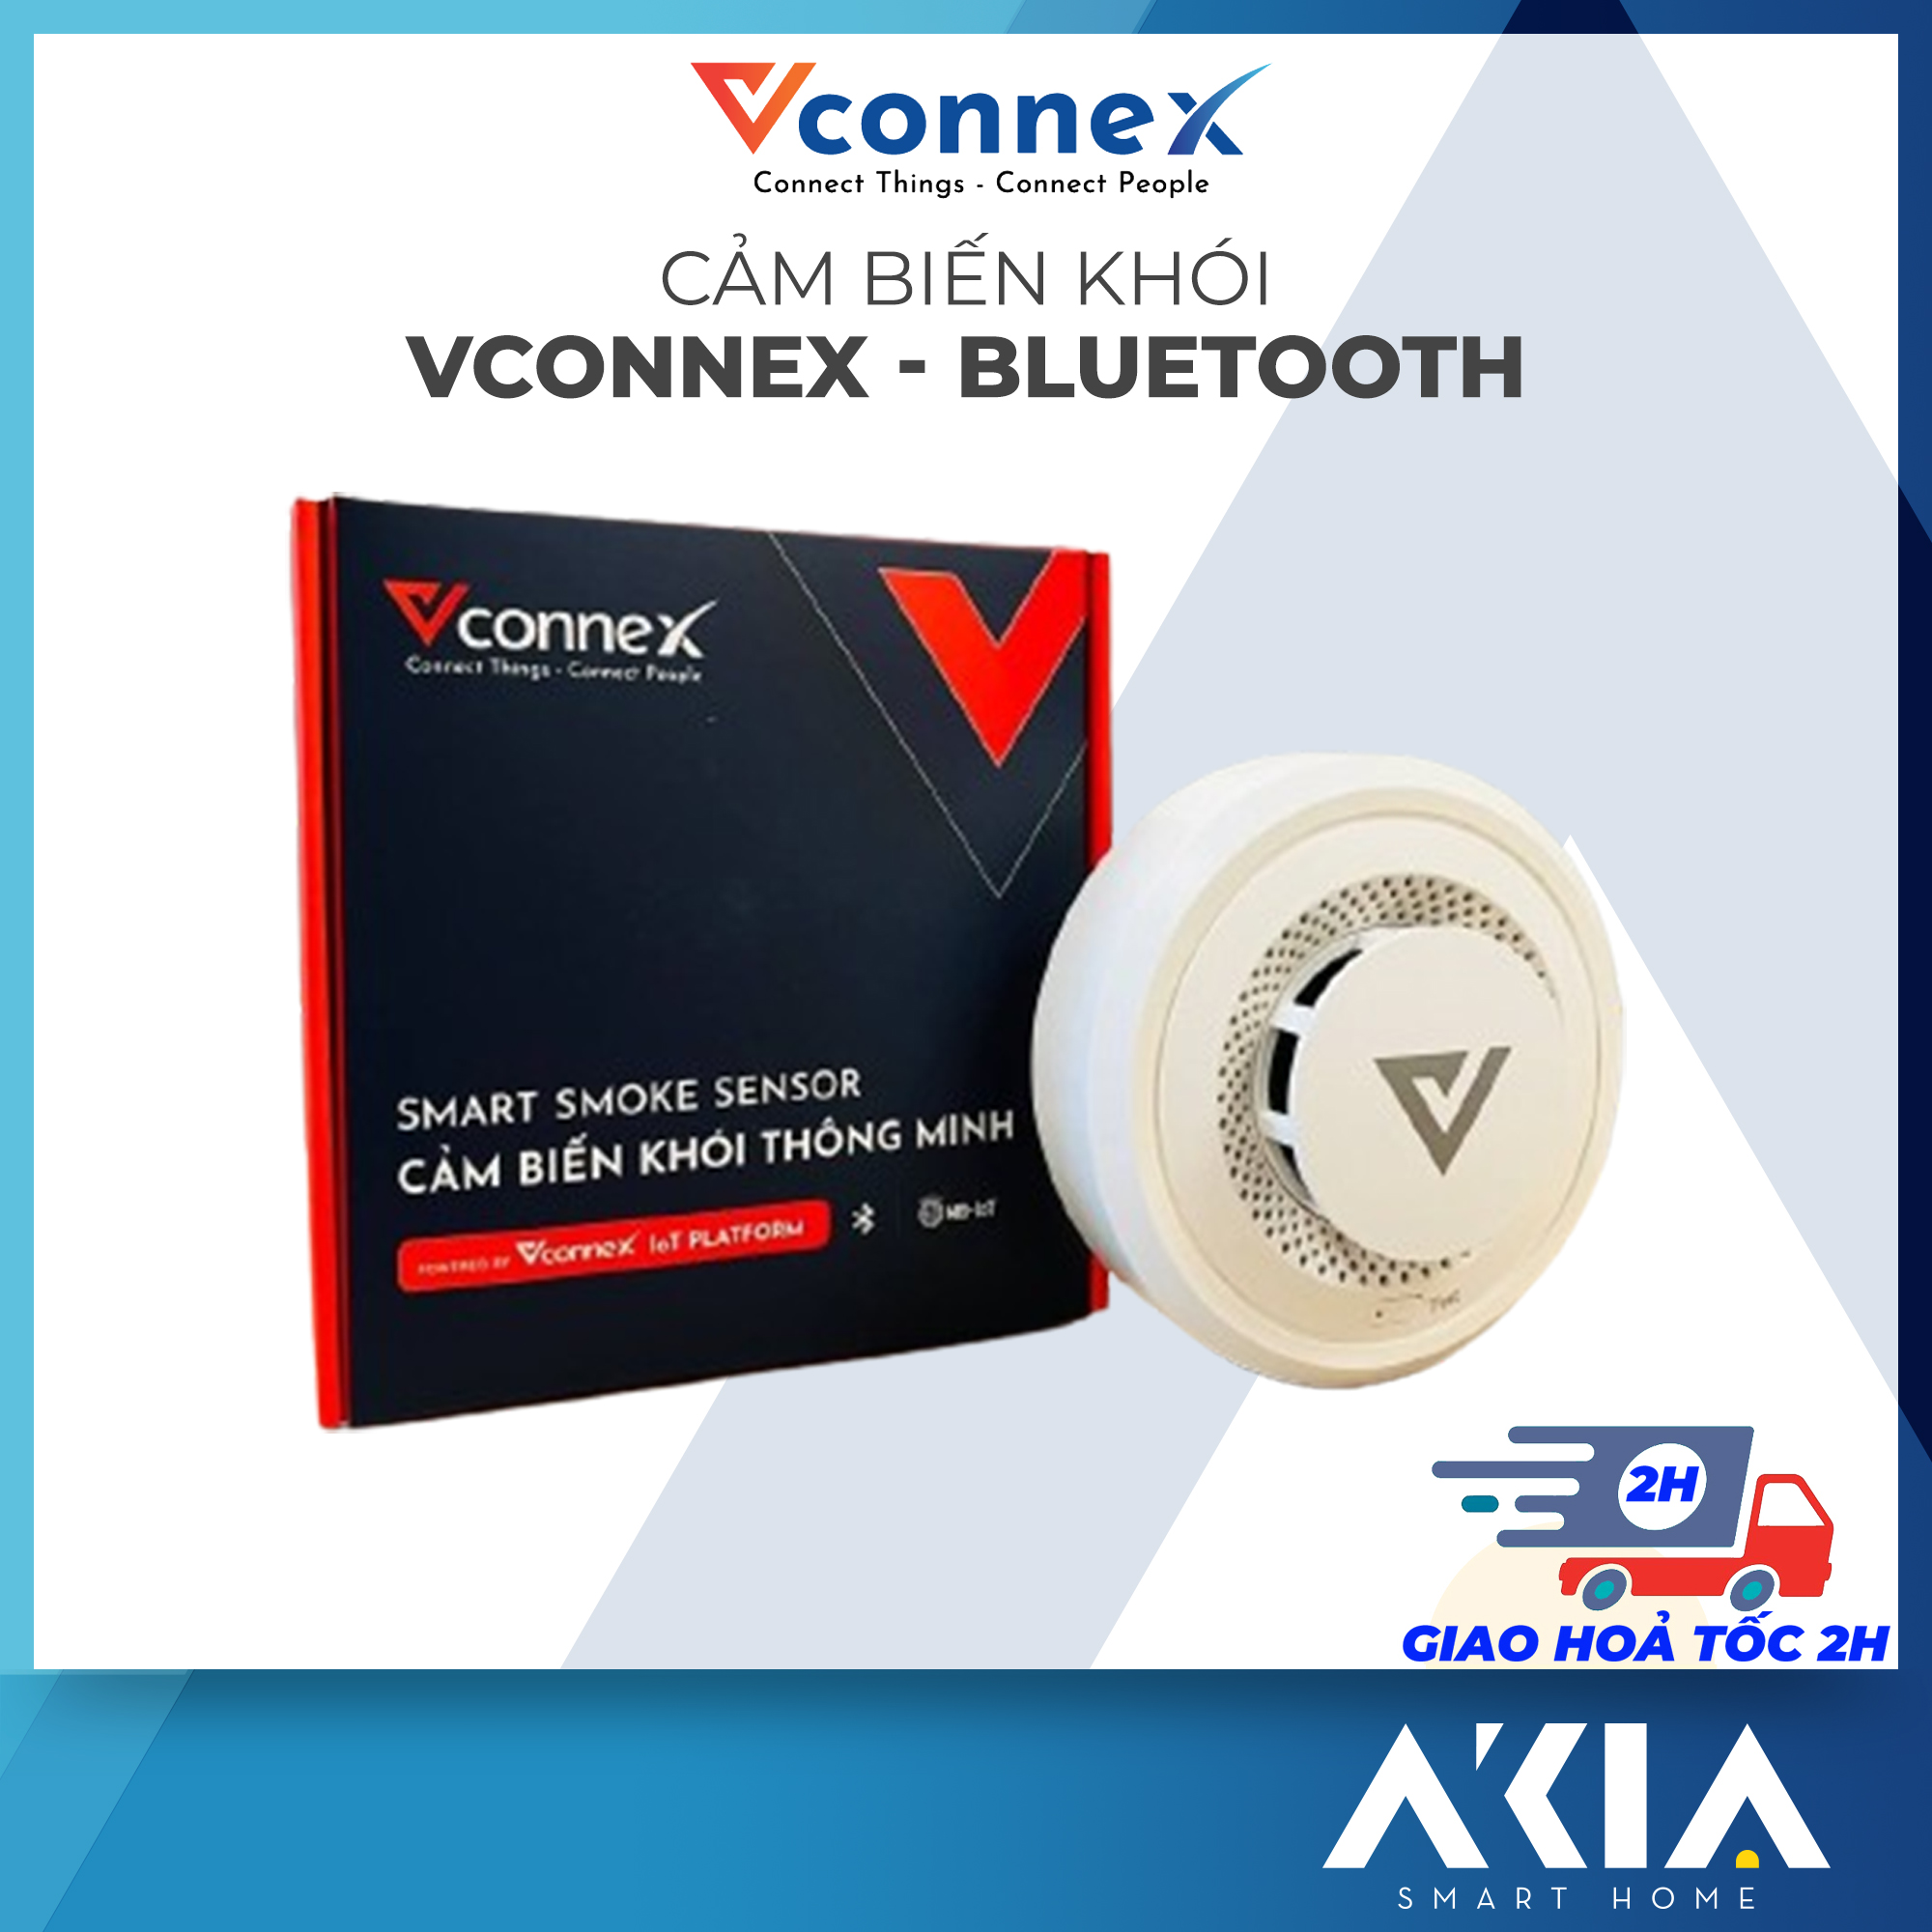 Cảm biến báo khói thông minh Vconnex Bluetooth Mesh - Phát hiện cháy, Hú còi báo, Thông báo qua điện thoại - HÀNG CHÍNH HÃNG